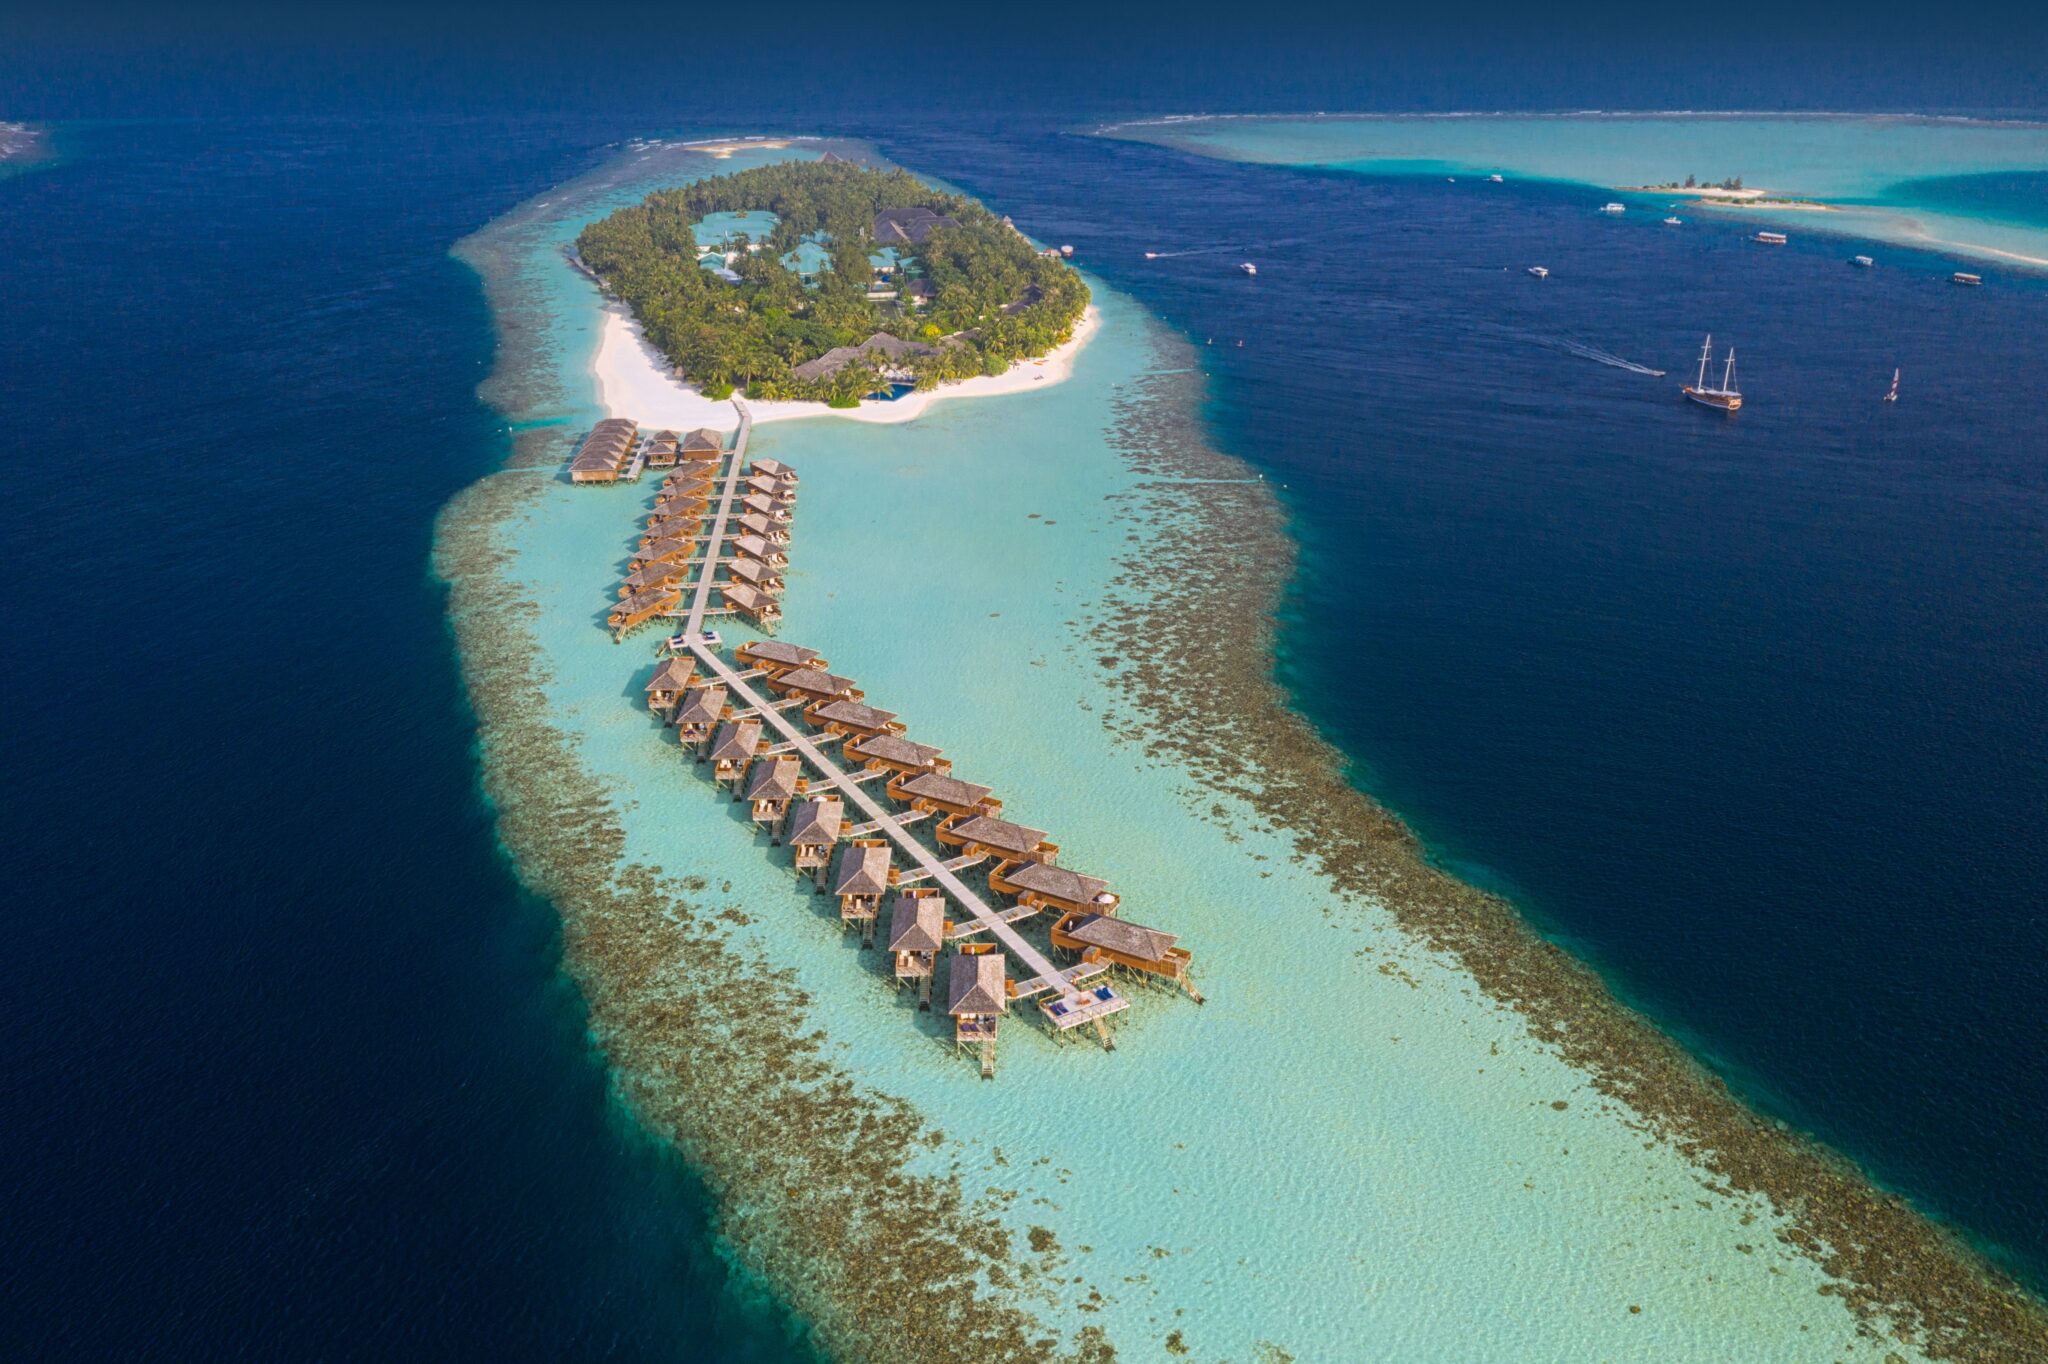 منظر تم تصويره من الجو لمنتجع وسبا جزيرة فيلاميندهو في جزر المالديف